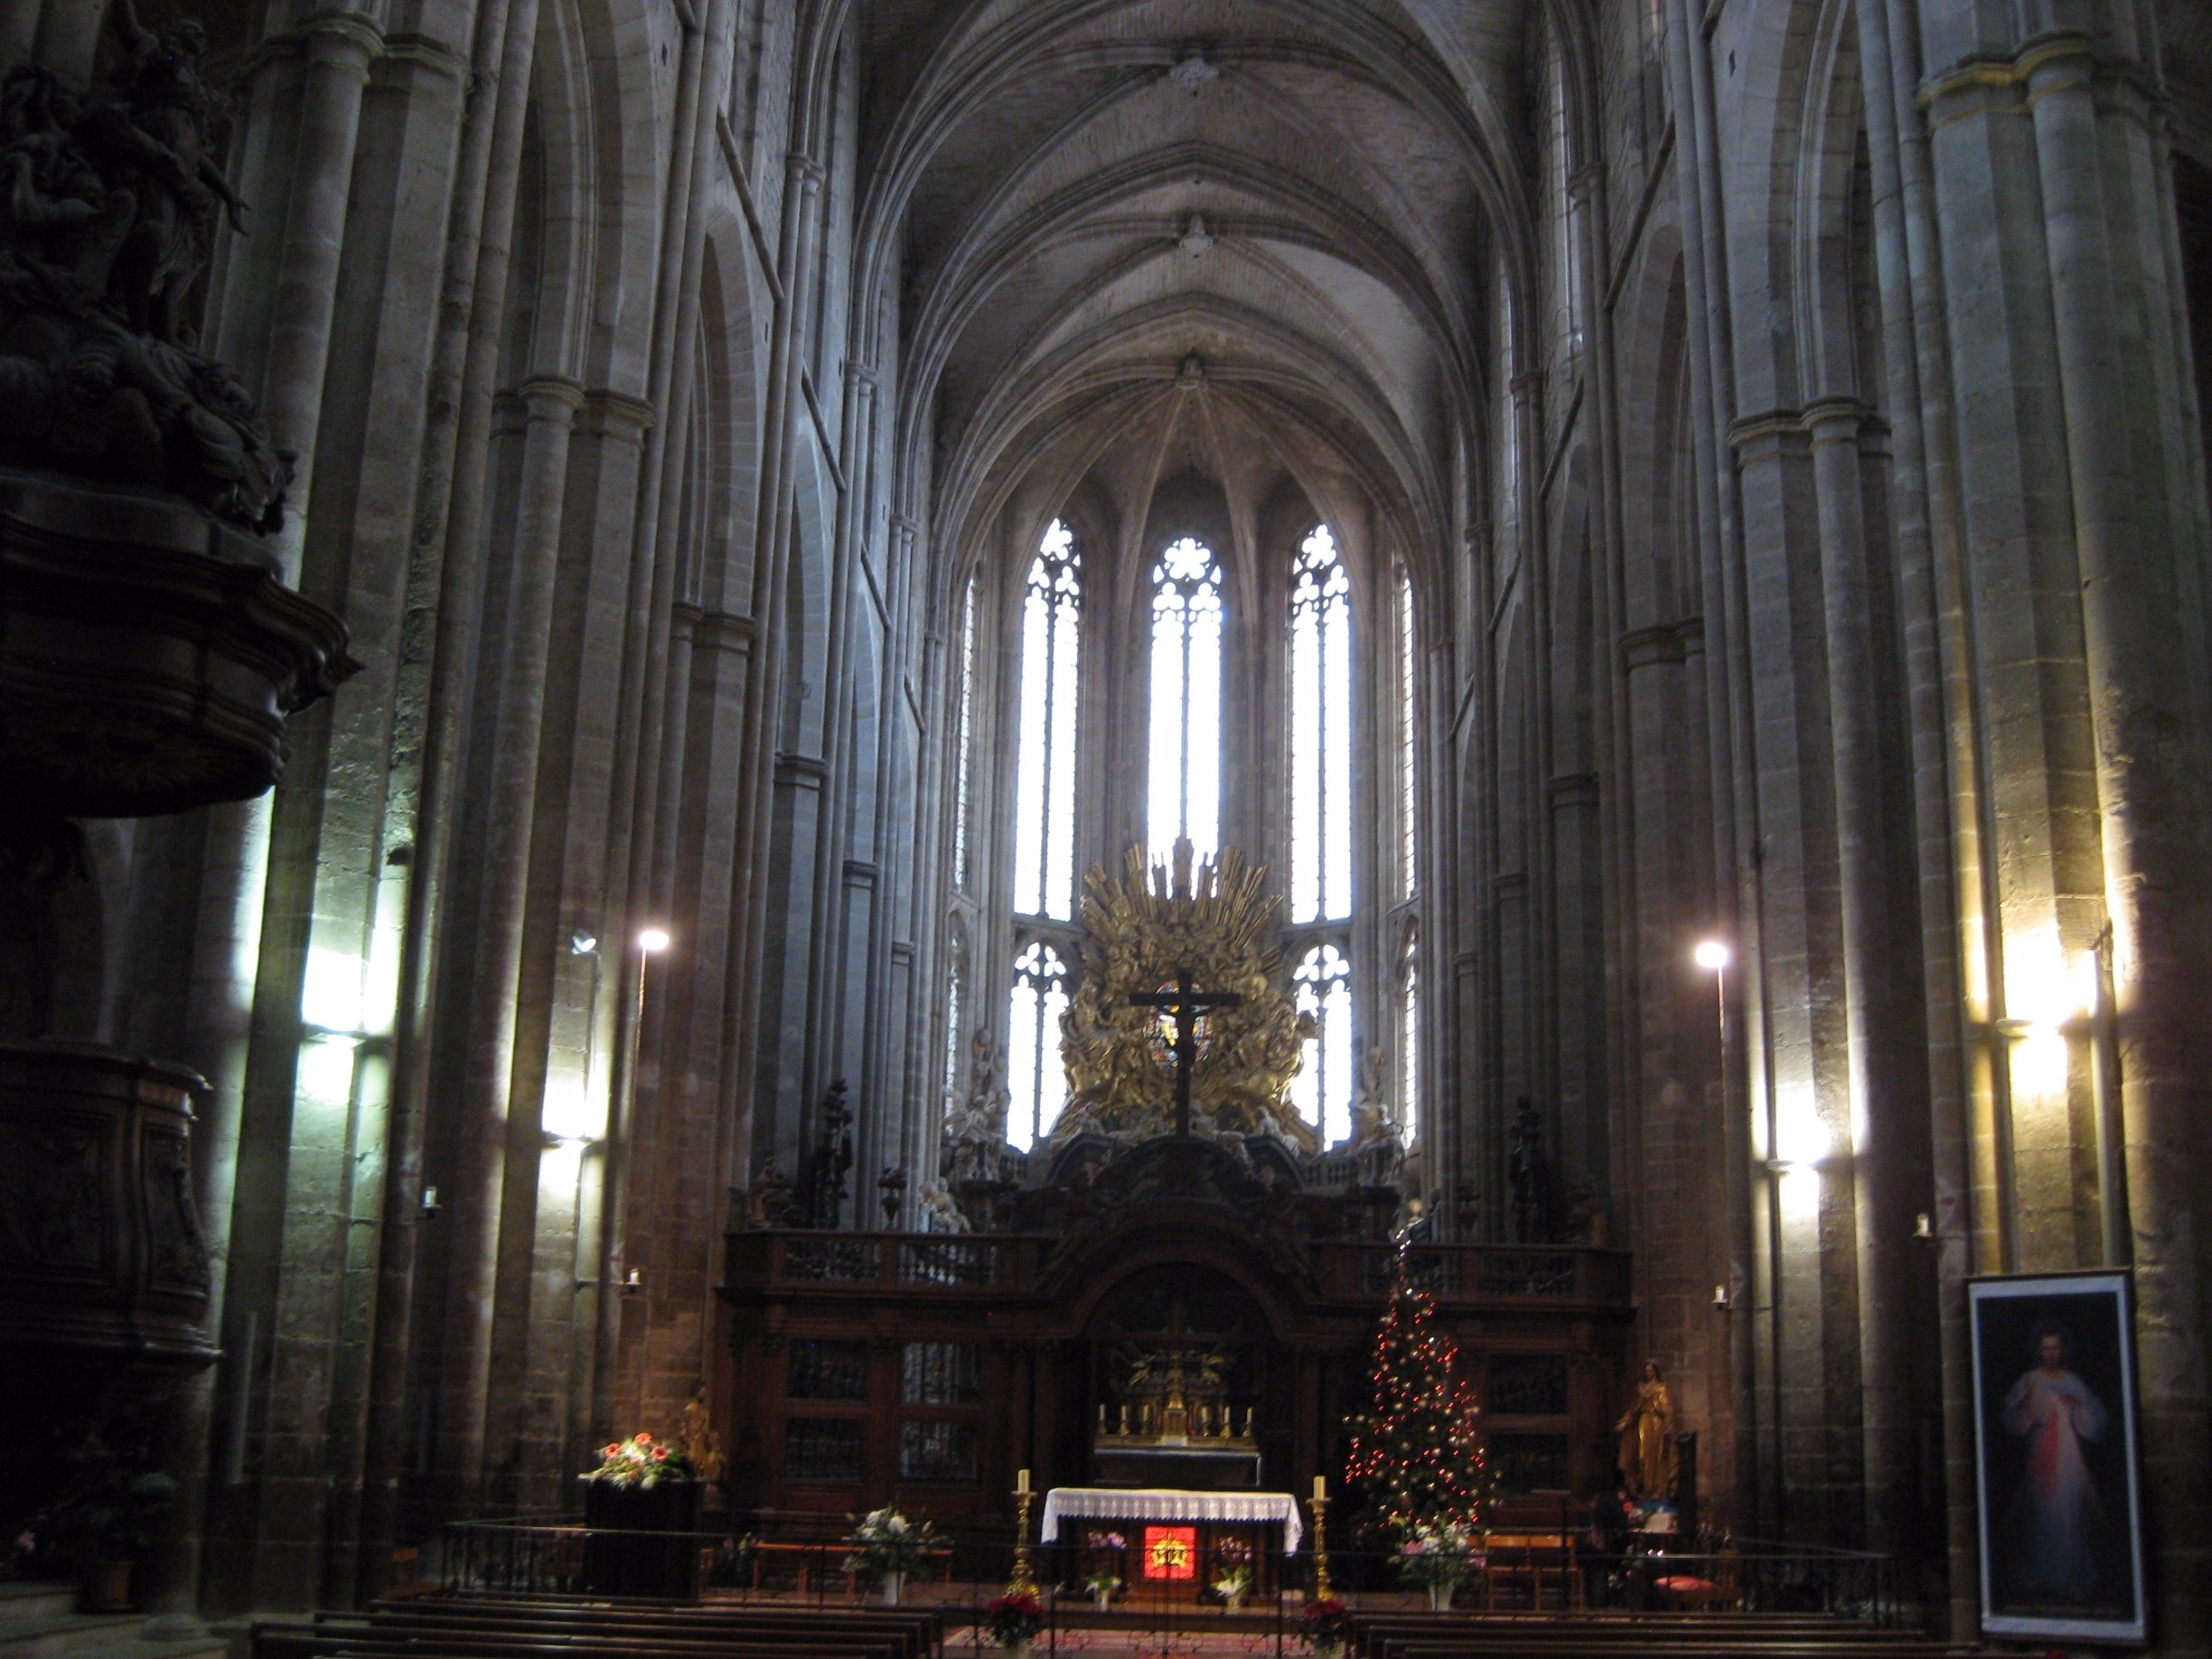 Altar of the Basilica
-2015